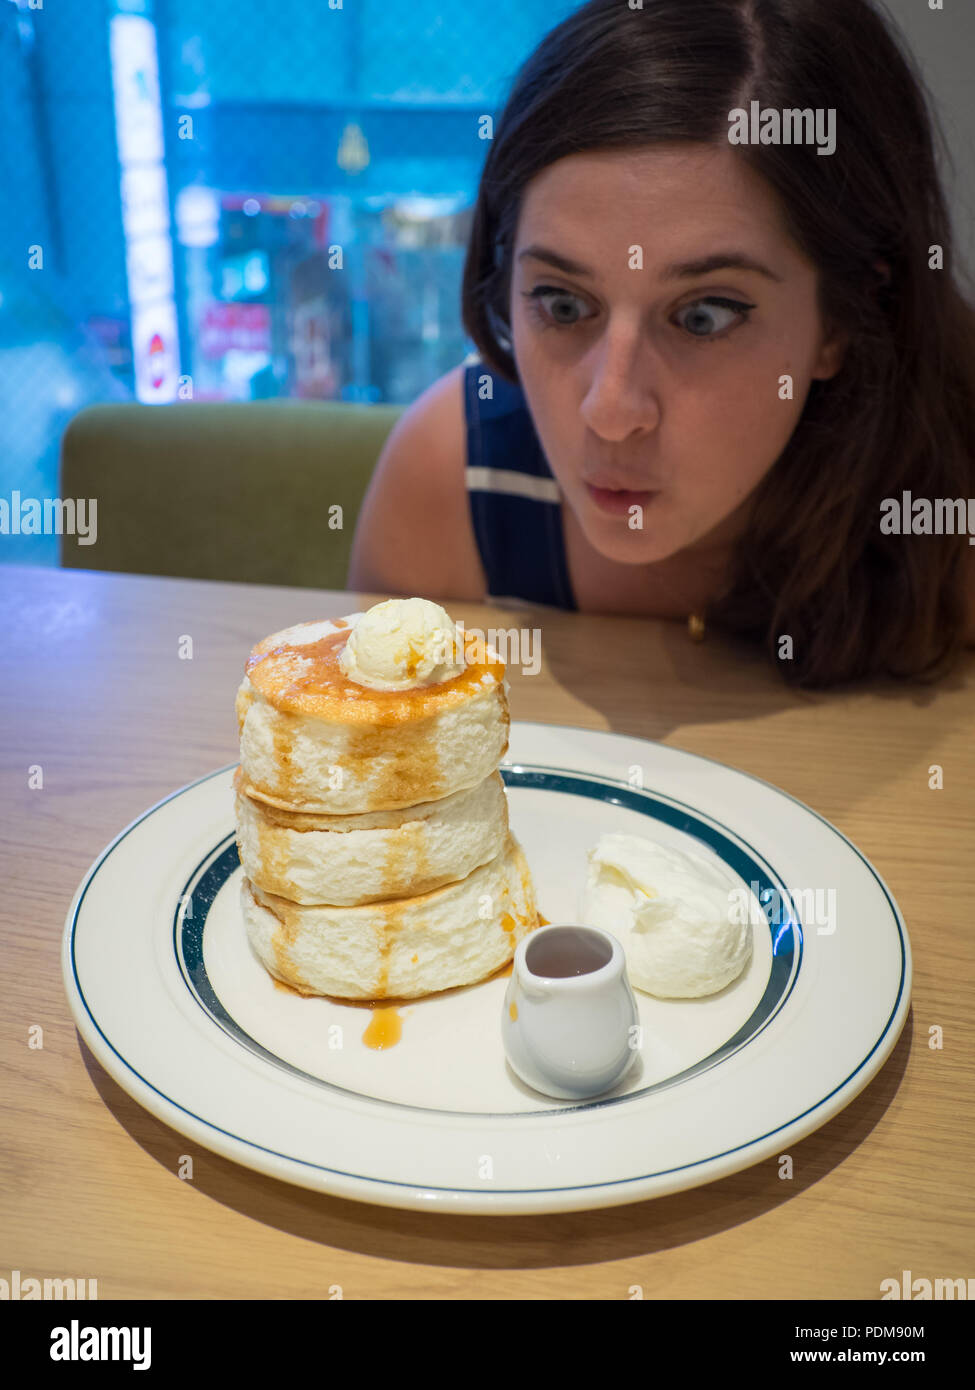 Une jolie petite fille brune est excitée par des crêpes japonaises moelleuses à soufflé de qualité supérieure de Gram Cafe & Pancakes à Hiroshima, au Japon. Banque D'Images